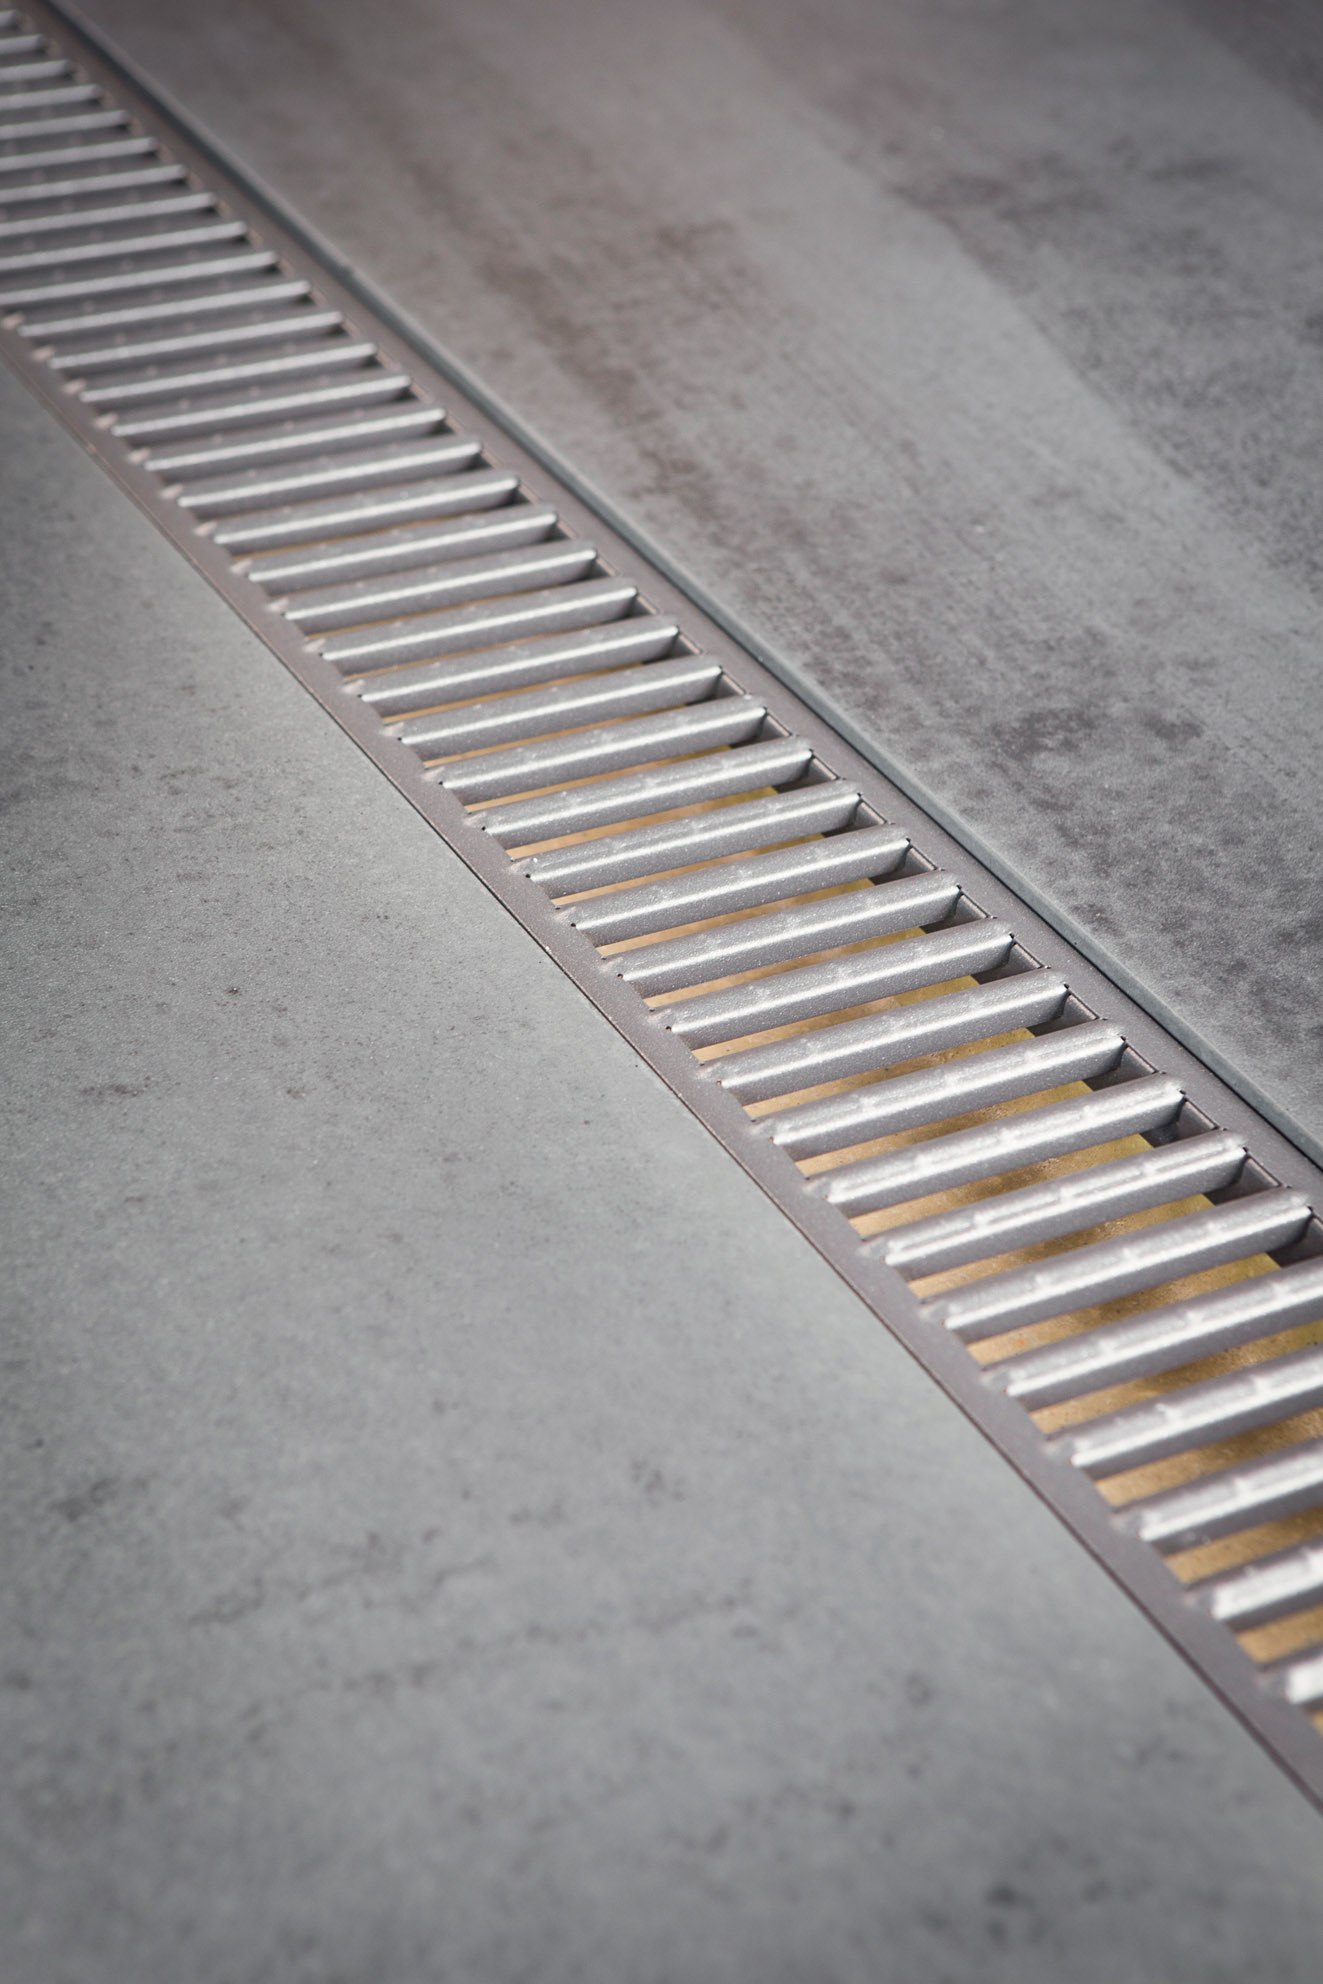 Caniveau de drainage ACO Euroline Shadow Grey avec un grille revêtue d'un coating en poudre gris foncé